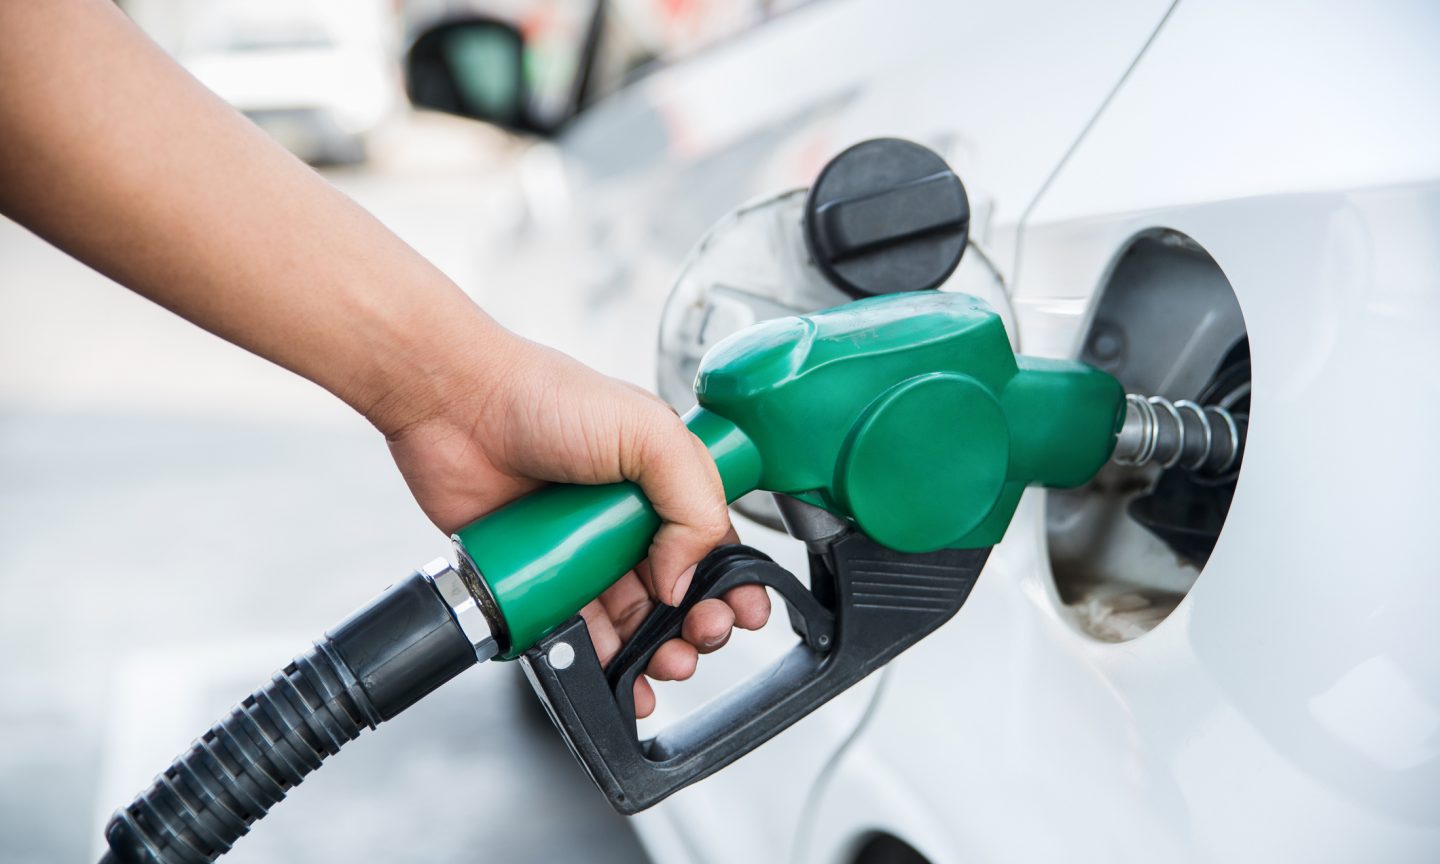 Problemas com ZIP Code nos postos de gasolina dos EUA - 2023